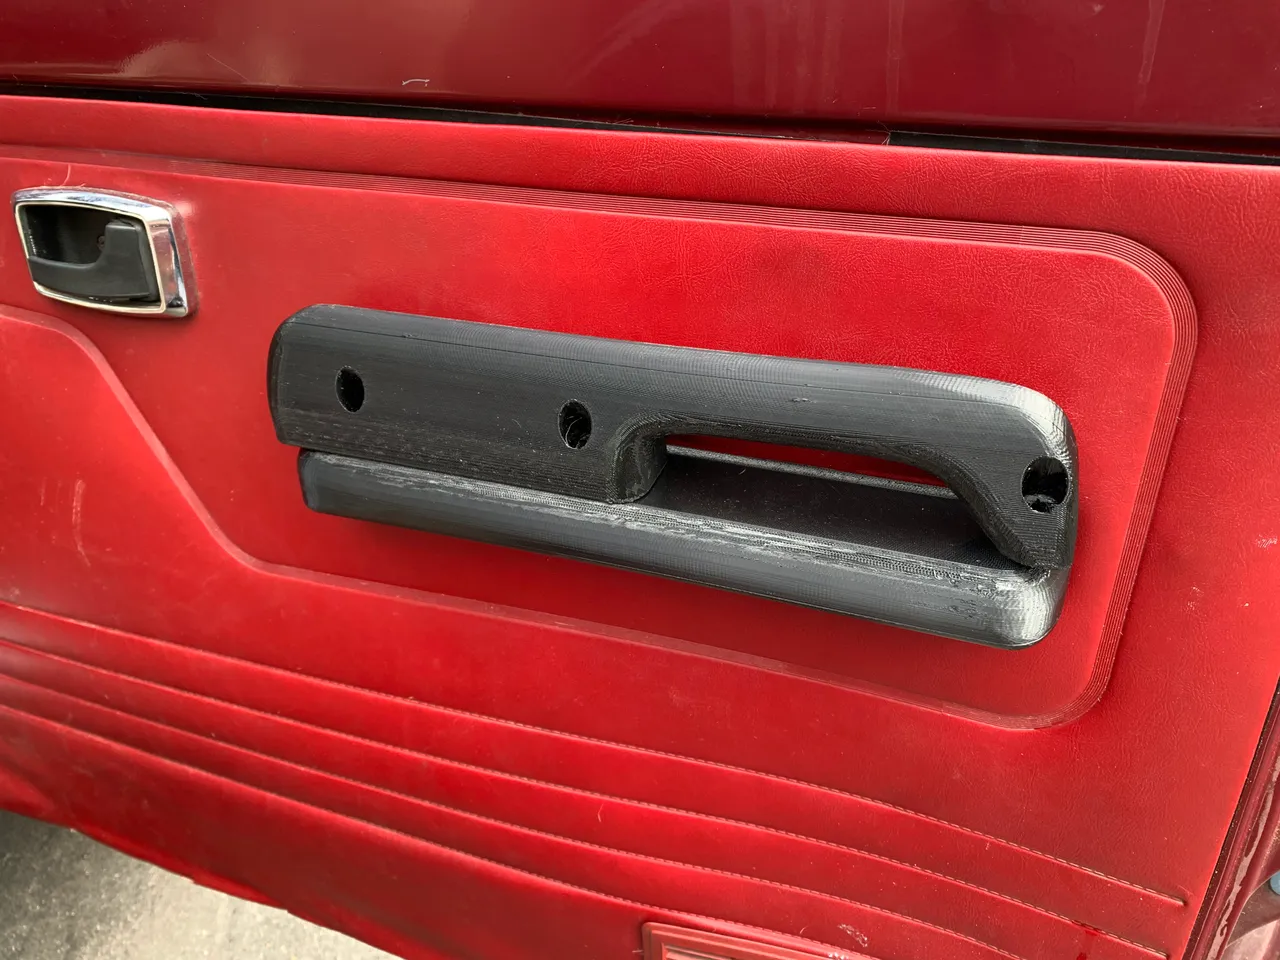 Ford Ranger Gen 1 interior door handle by MRussell2014